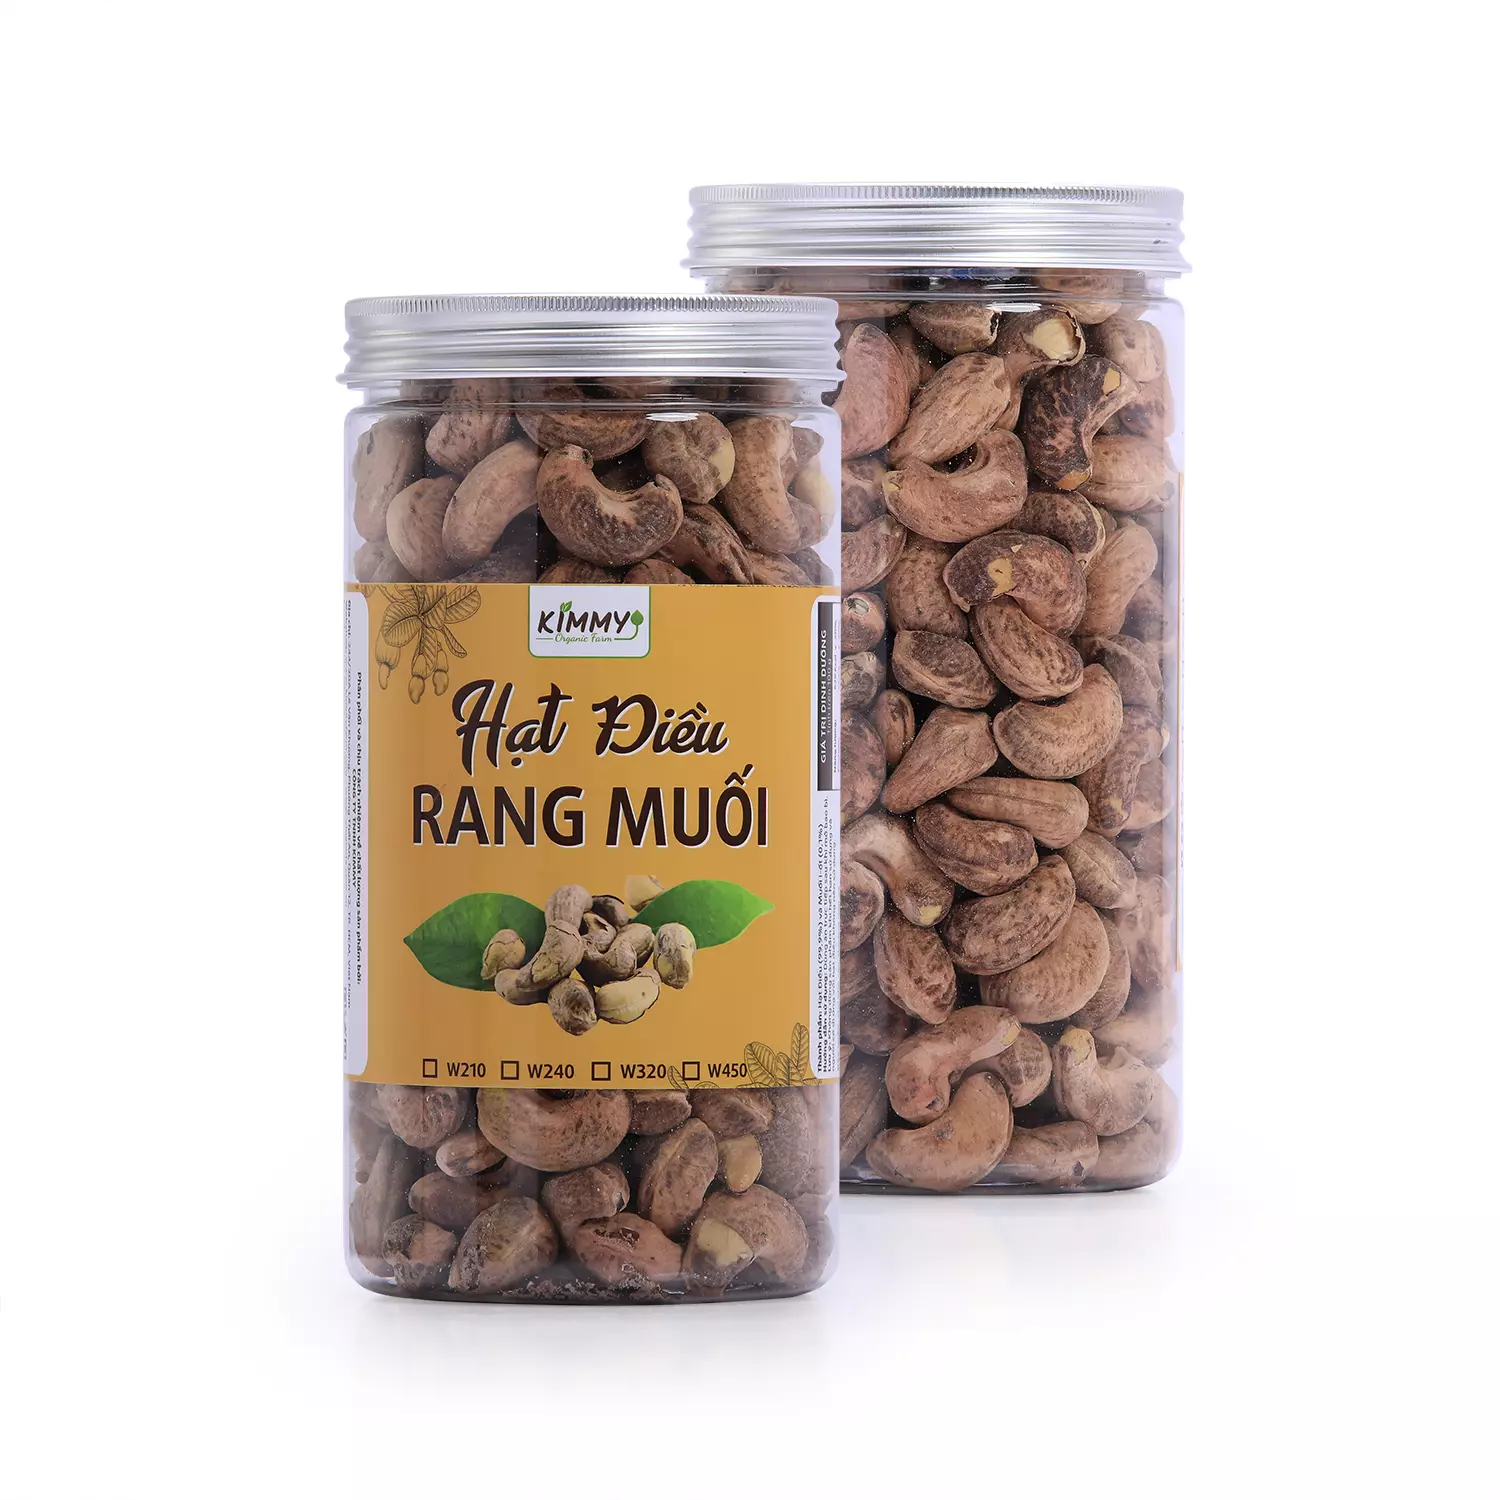 Premium W240 Roasted Cashew nuts with Testa Skin - Kimmy Farm Vietnam